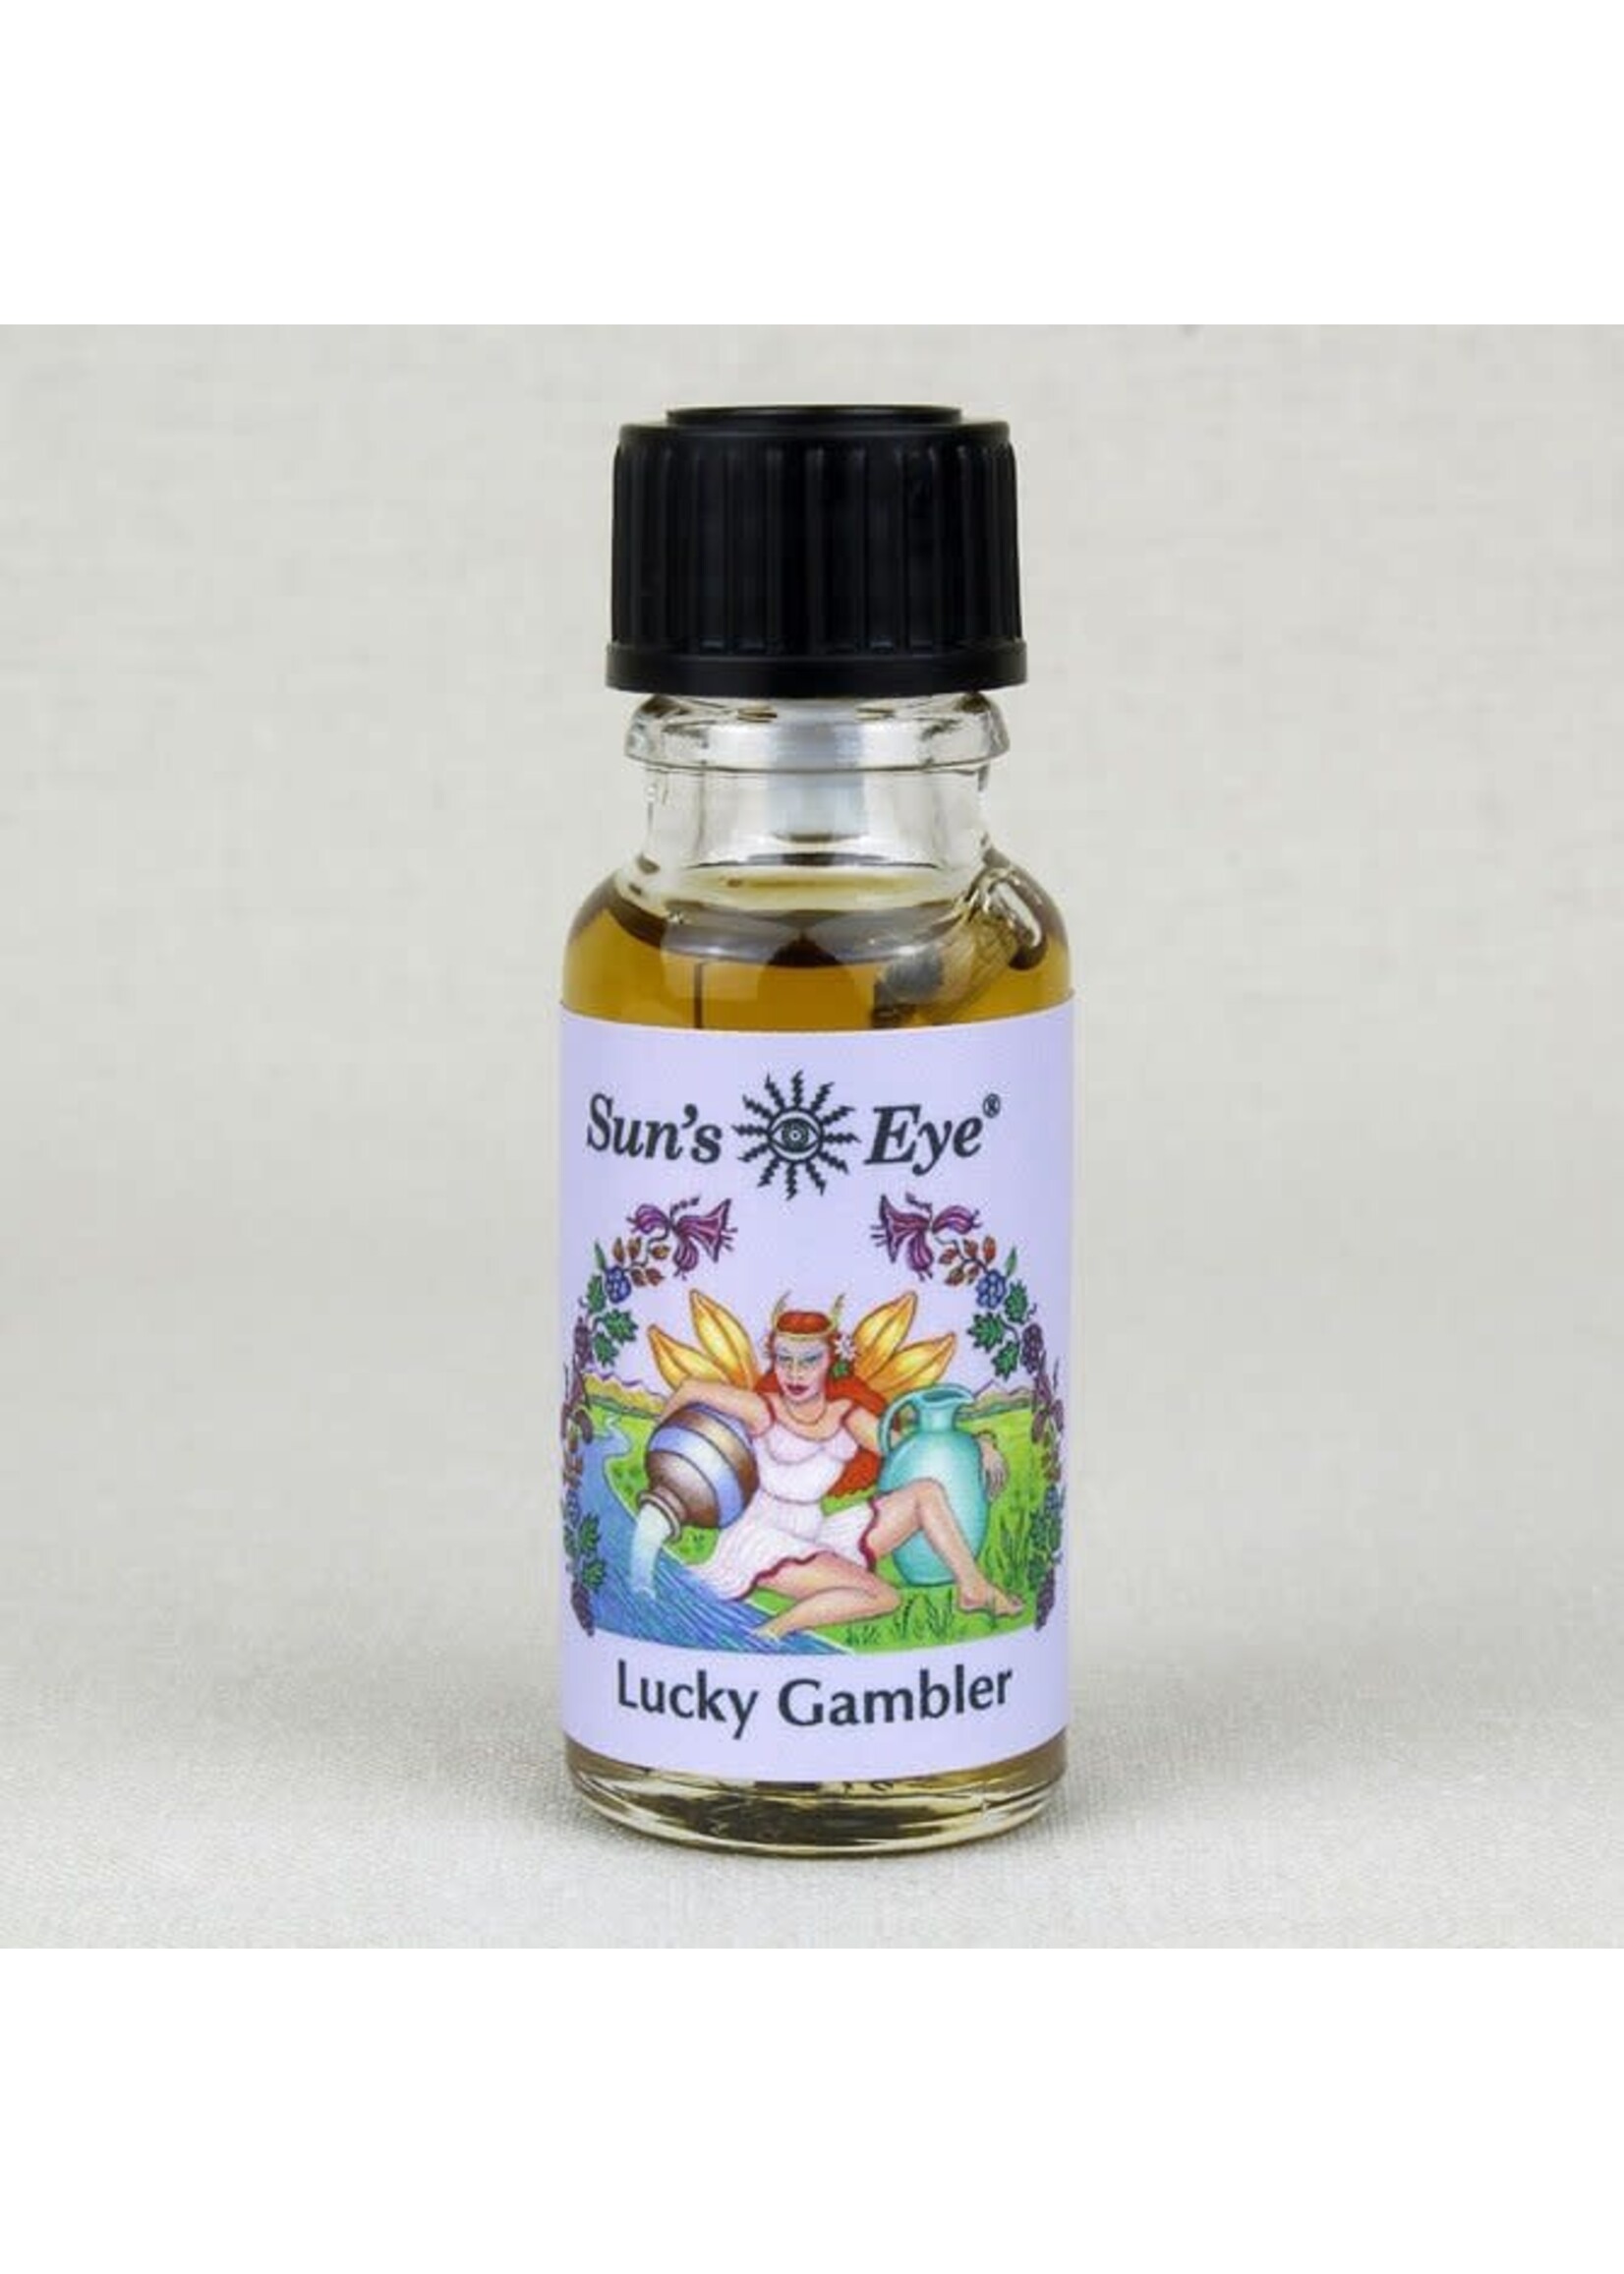 Sun's Eye Mystic Series Oil Blends - .5oz Bottle